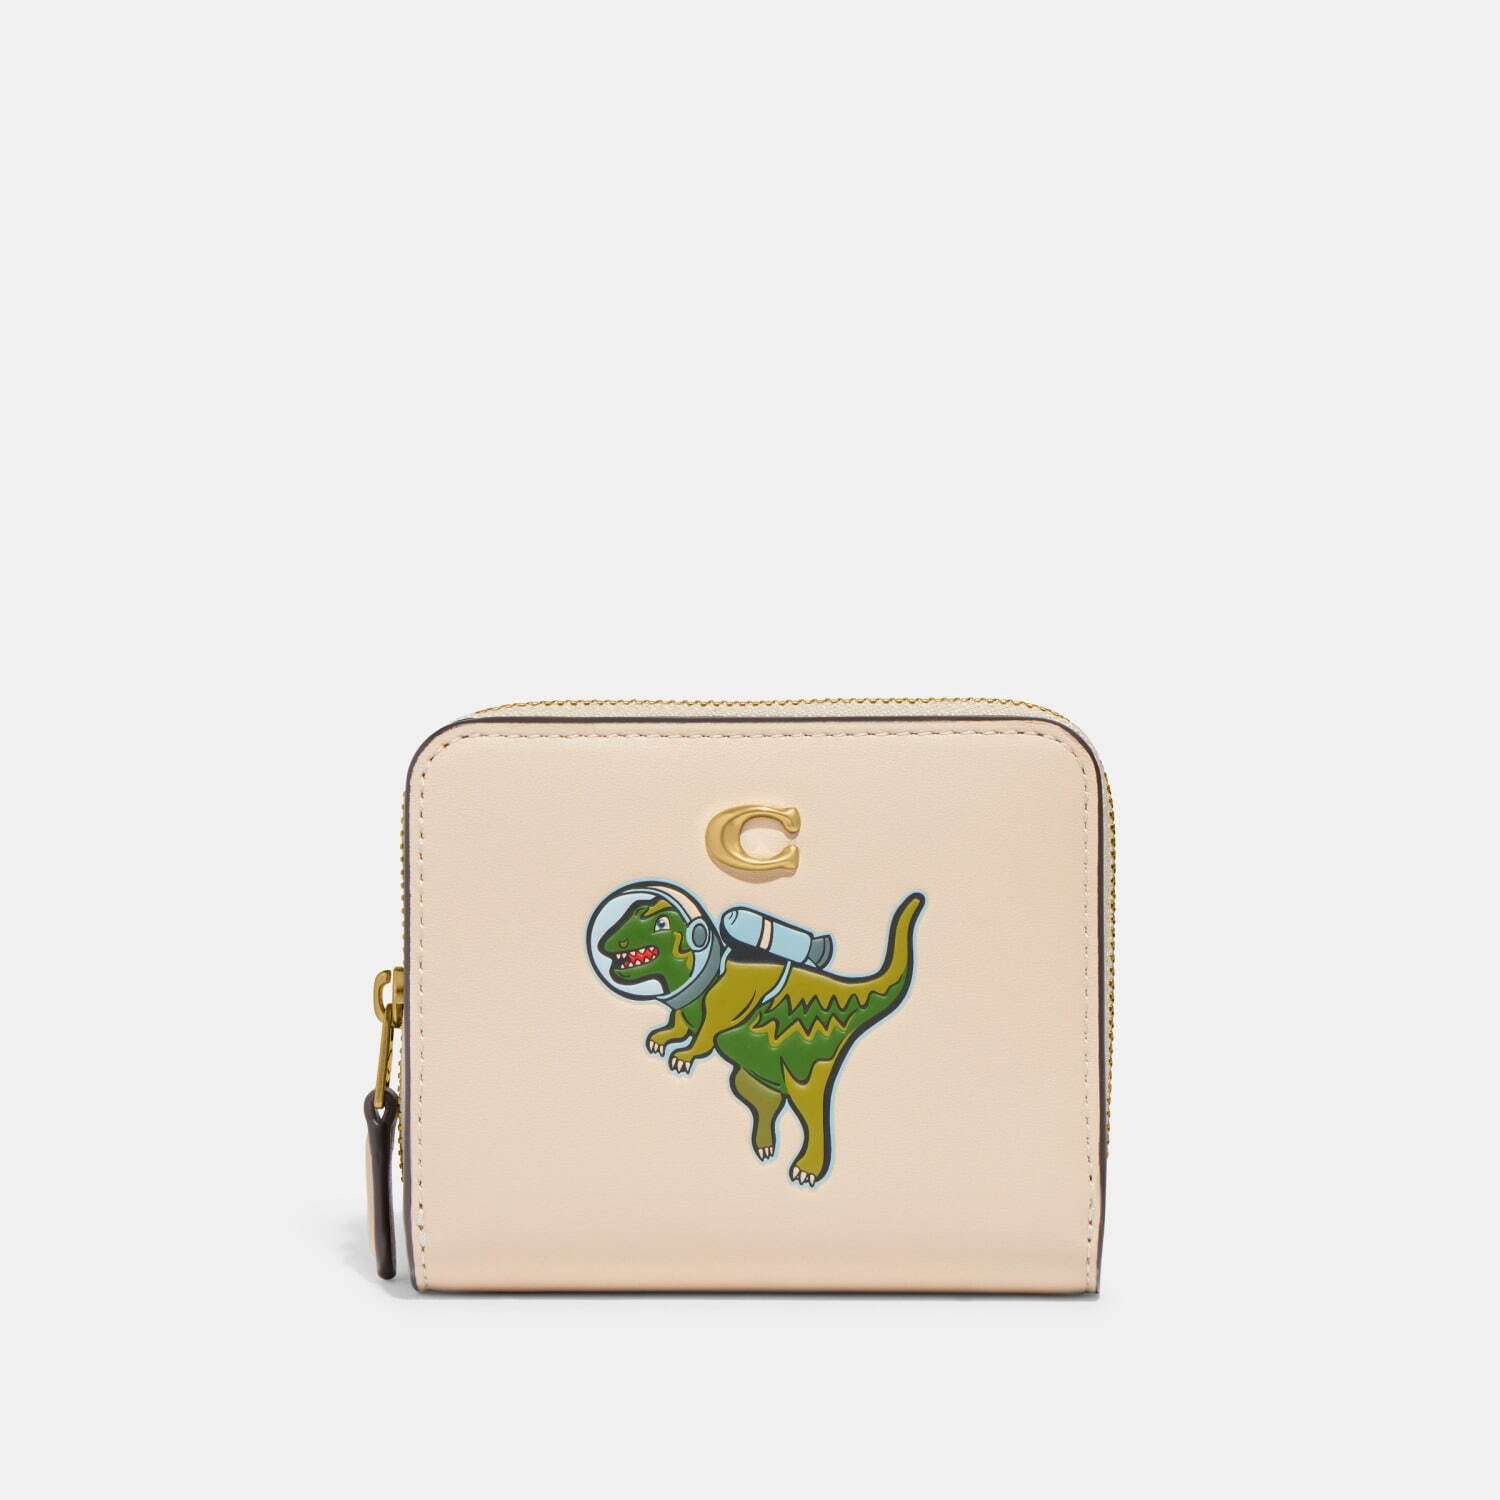 〈コーチ〉“宇宙服”の恐竜モチーフを配したラウンドジップ財布